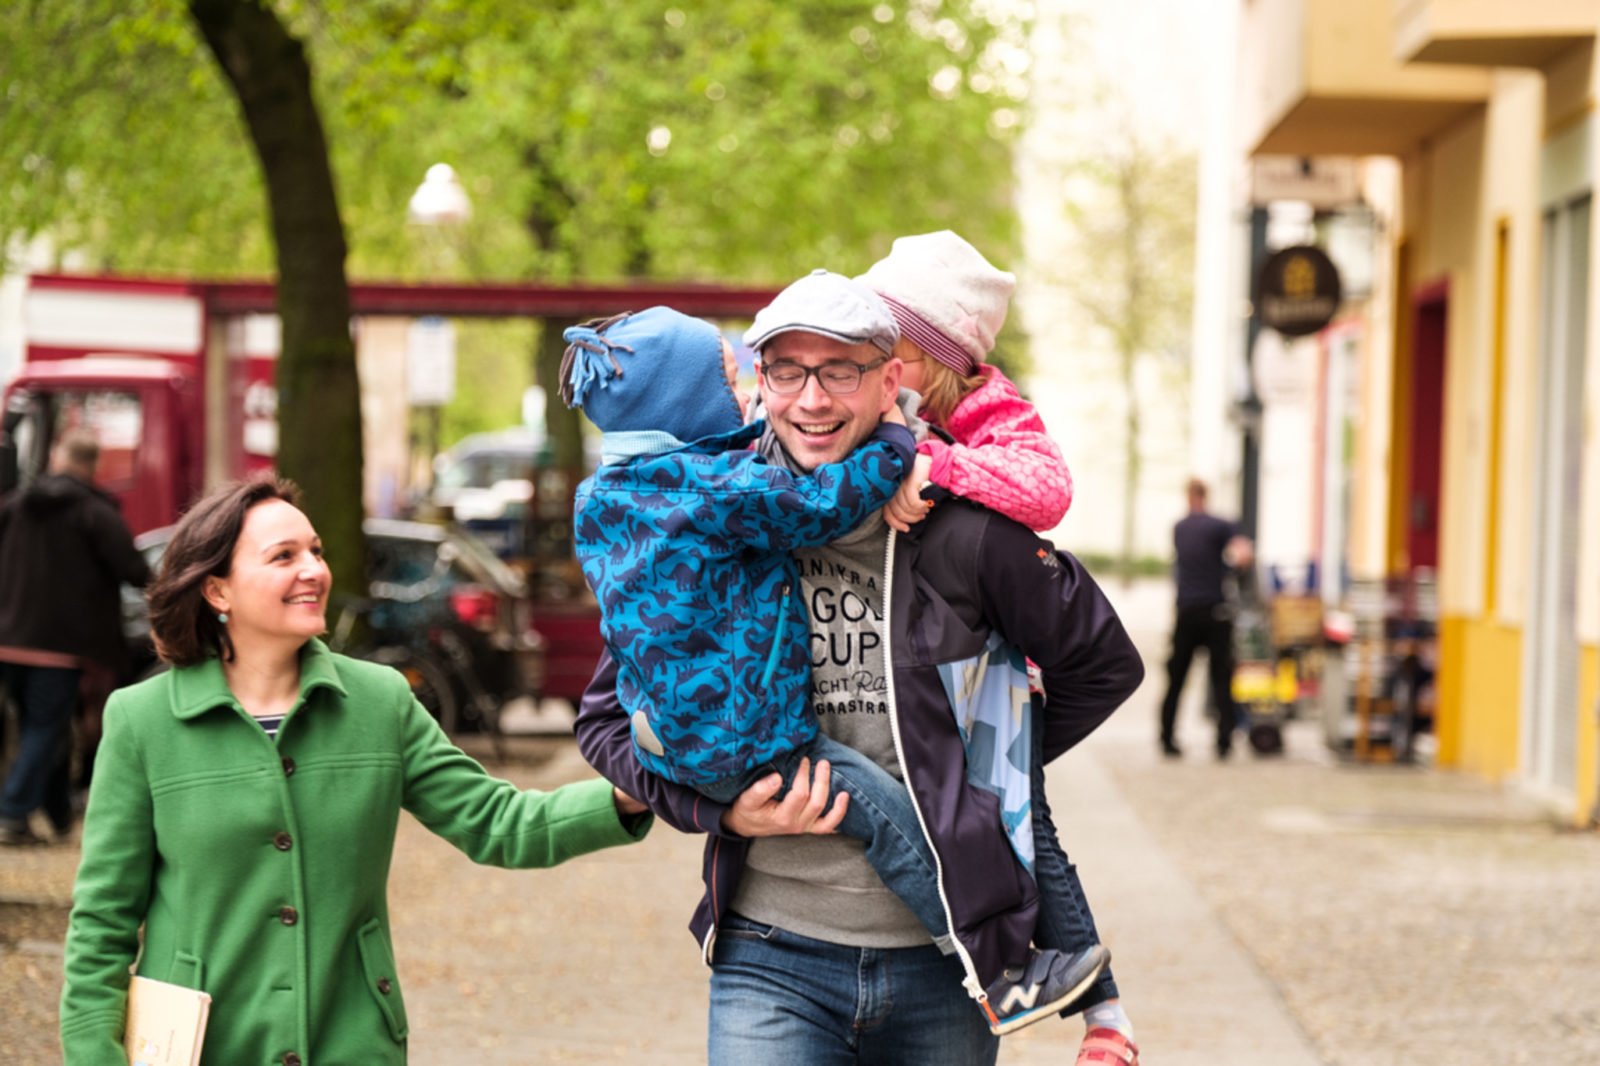 Eine vierköpfige Familie beim Spaziergang auf der Straße. Der Vater trägt seine zwei Kinder - eines auf dem Arm, das andere auf dem Rücken.